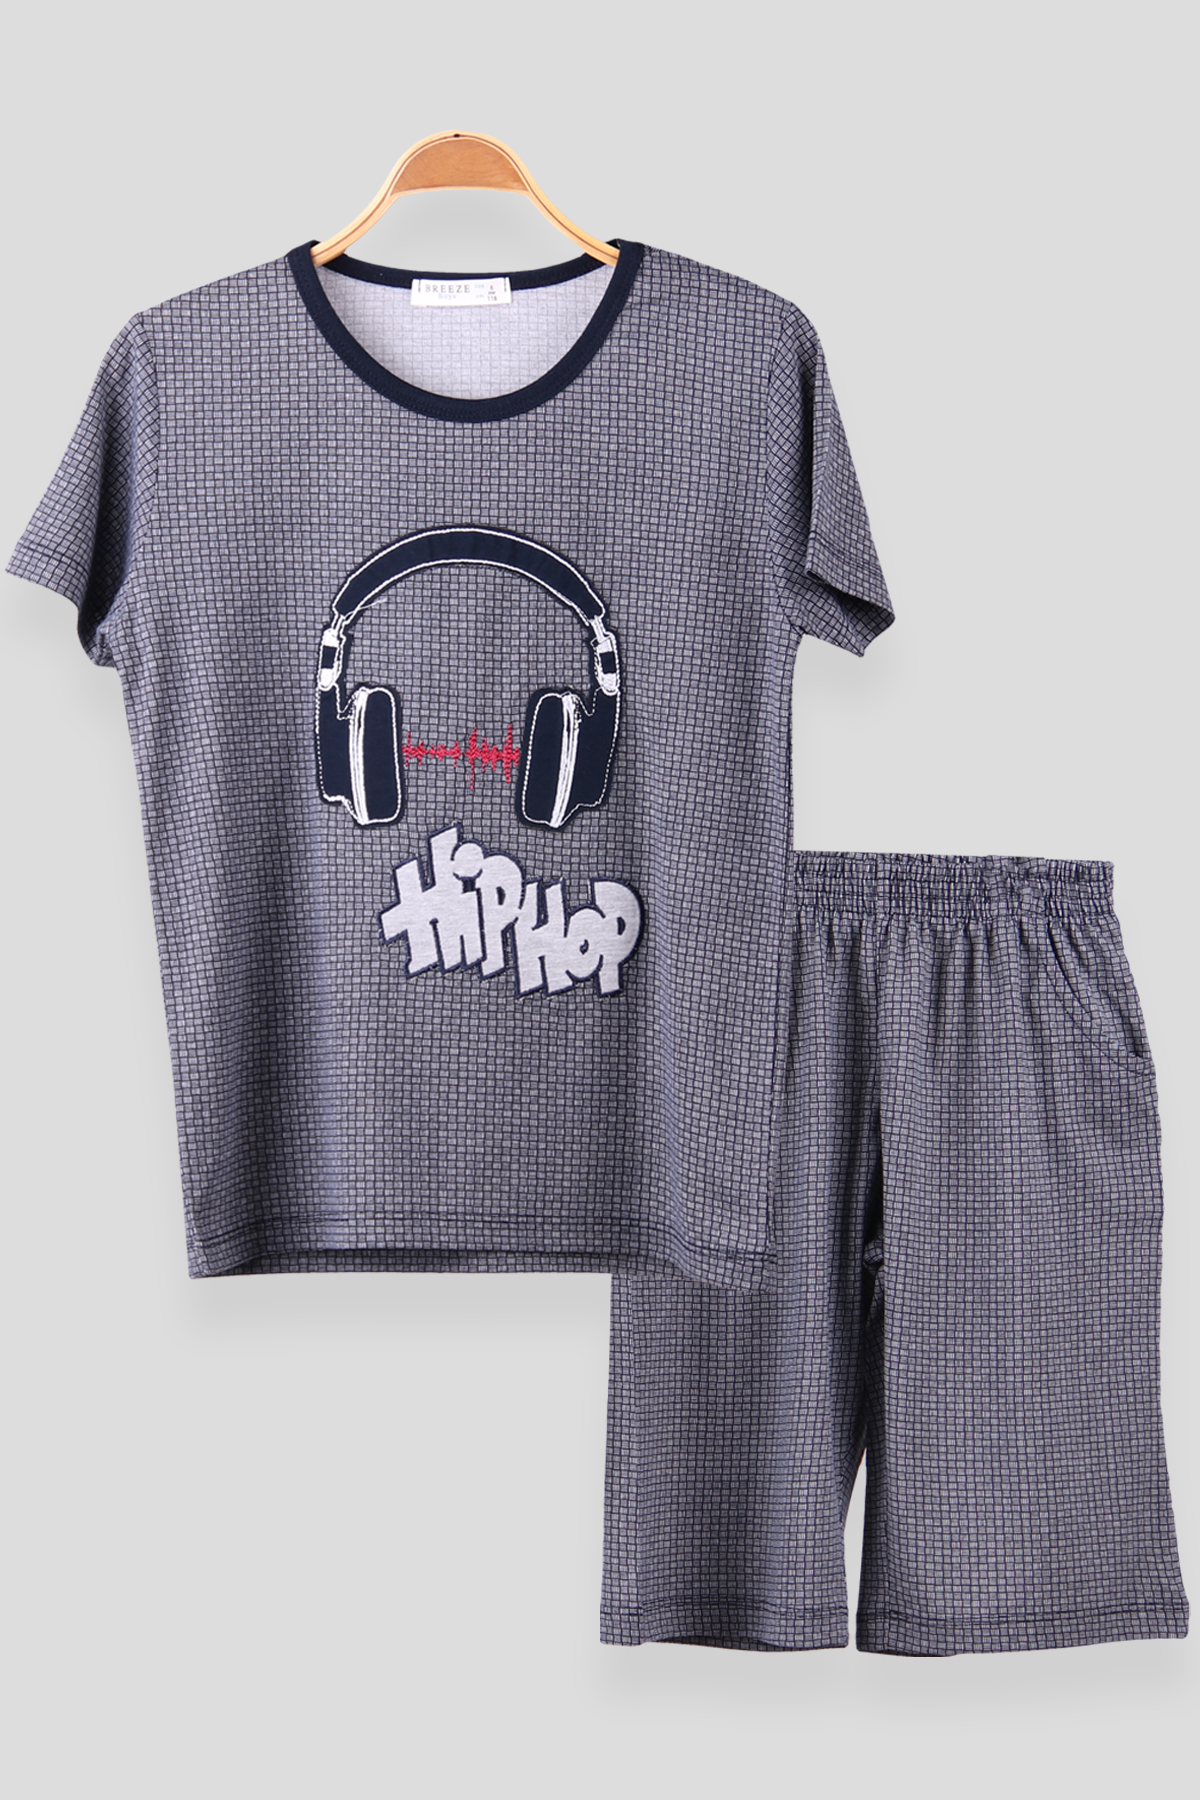 Erkek Çocuk Şortlu Pijama Takımı Lacivert 6-9 Yaş - Yumuşak Kumaş | Breeze